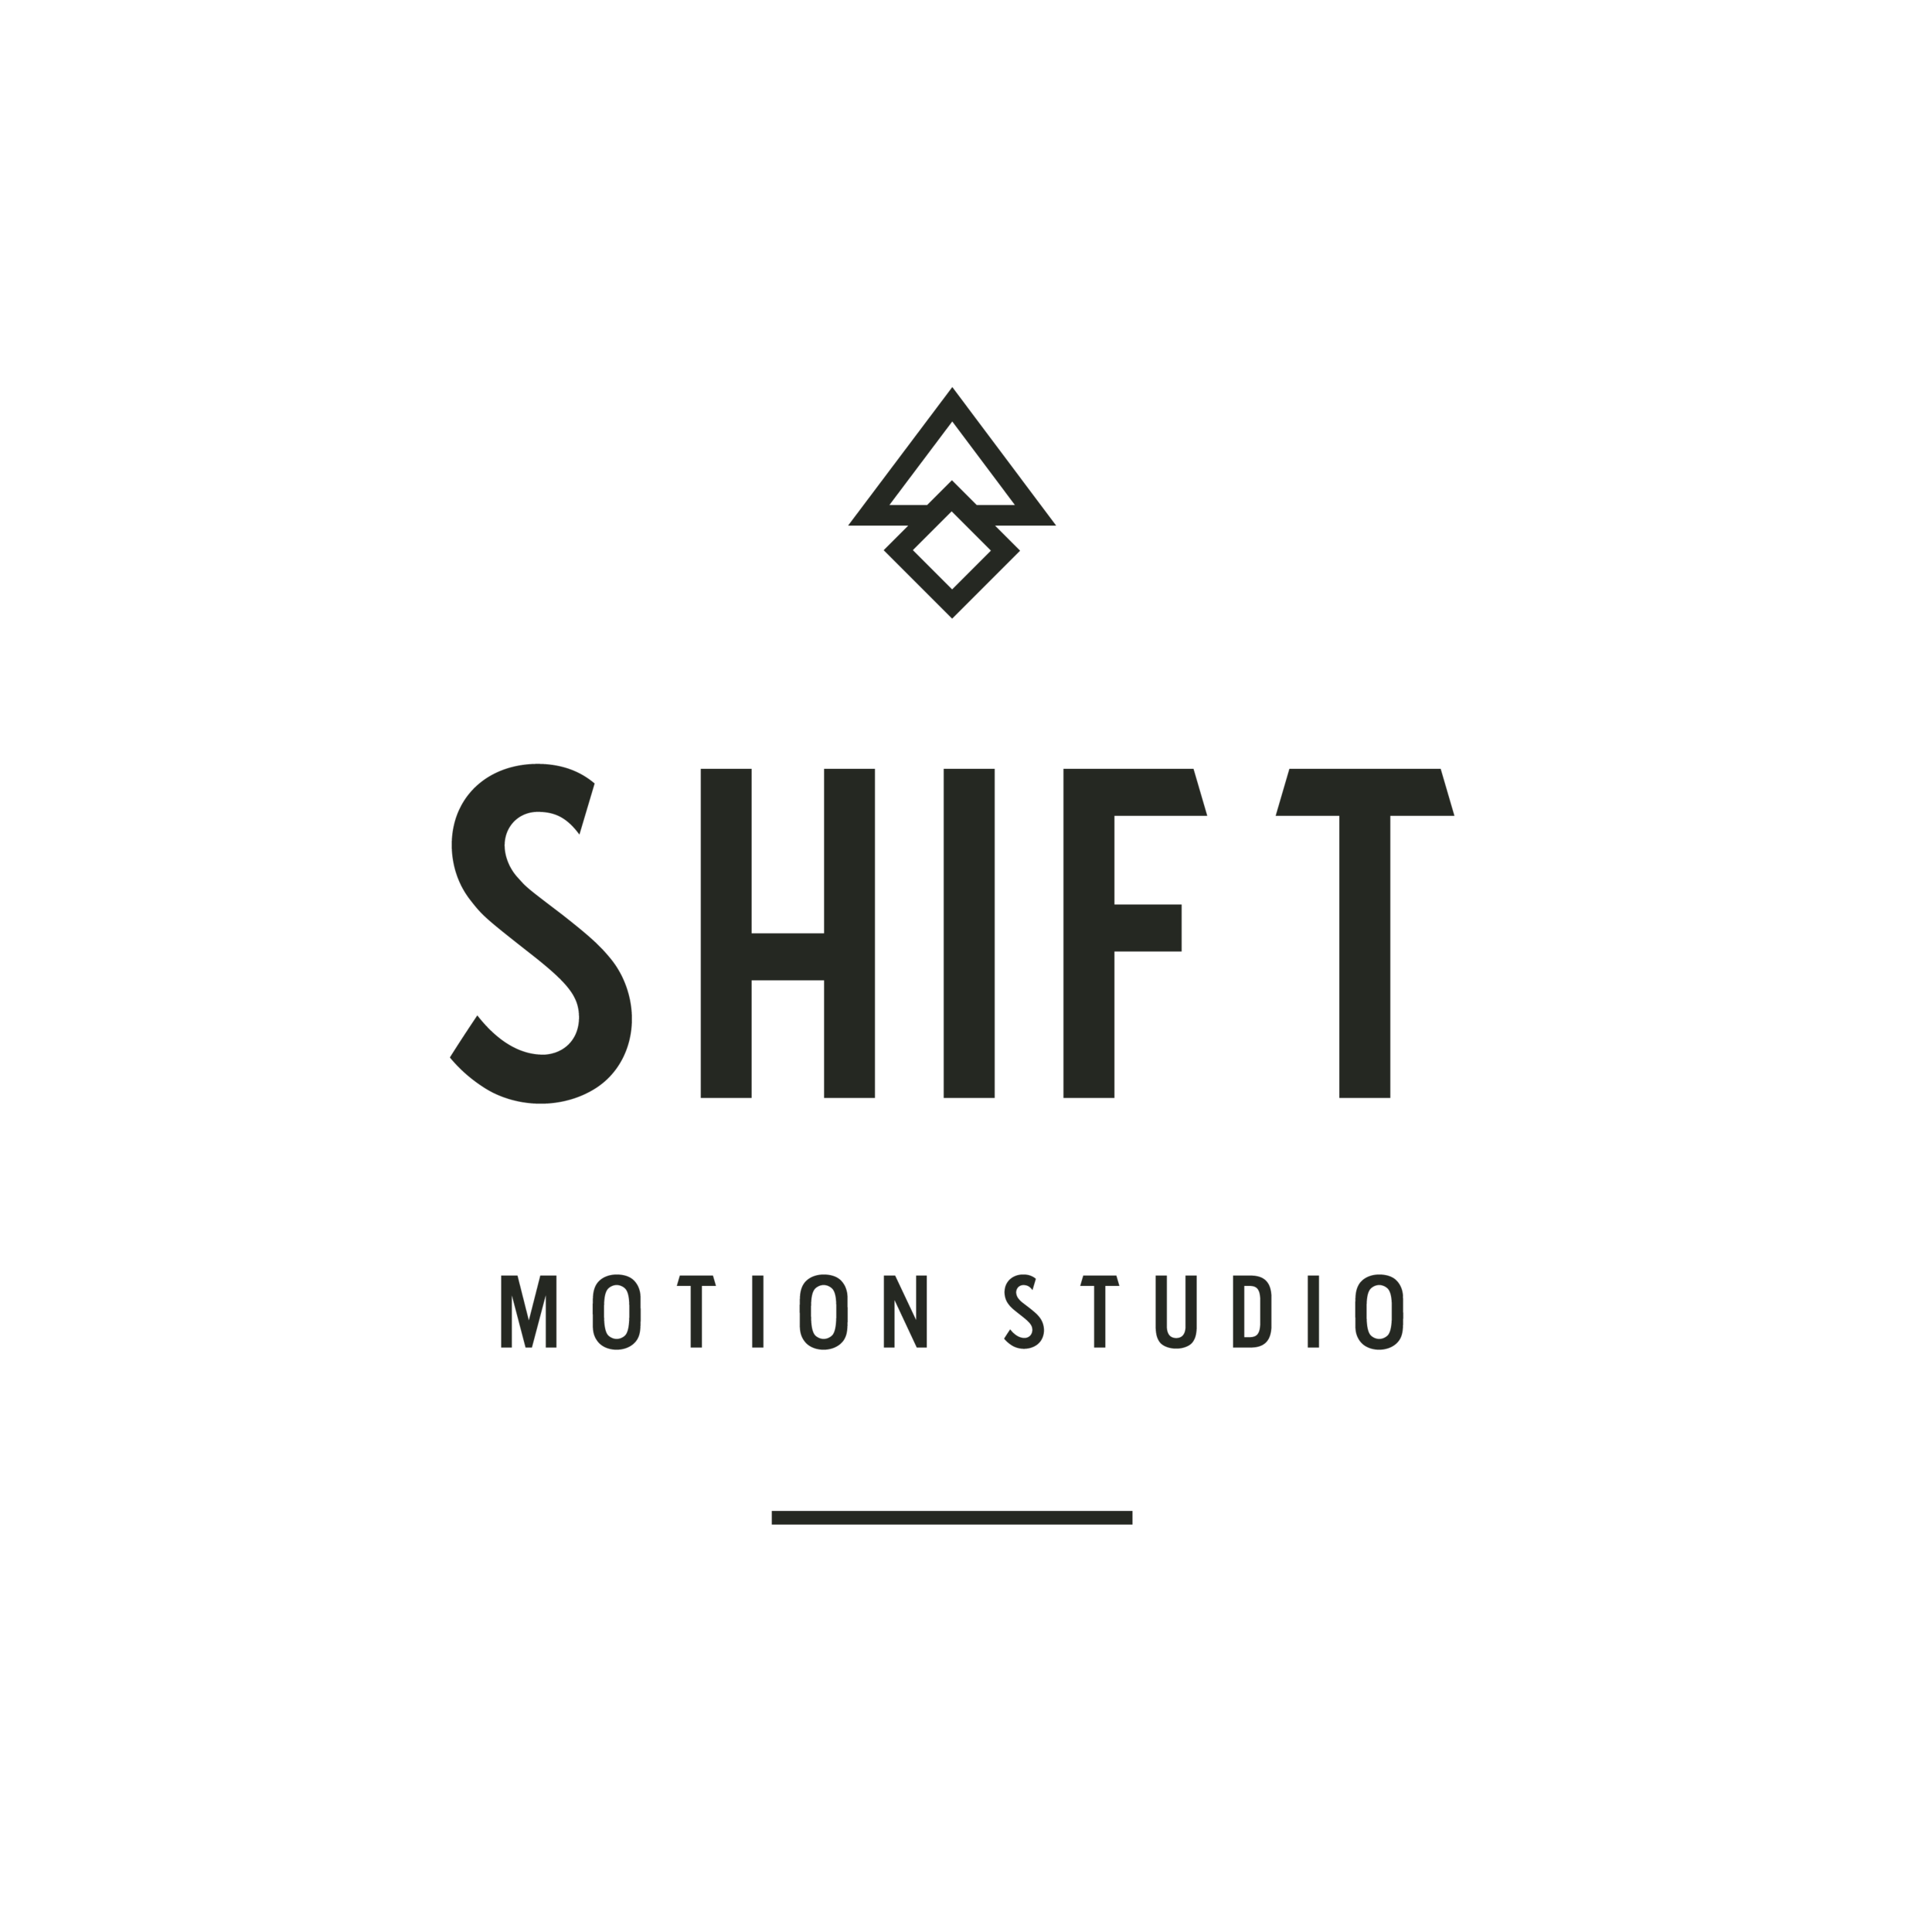 Shift Motion Studio